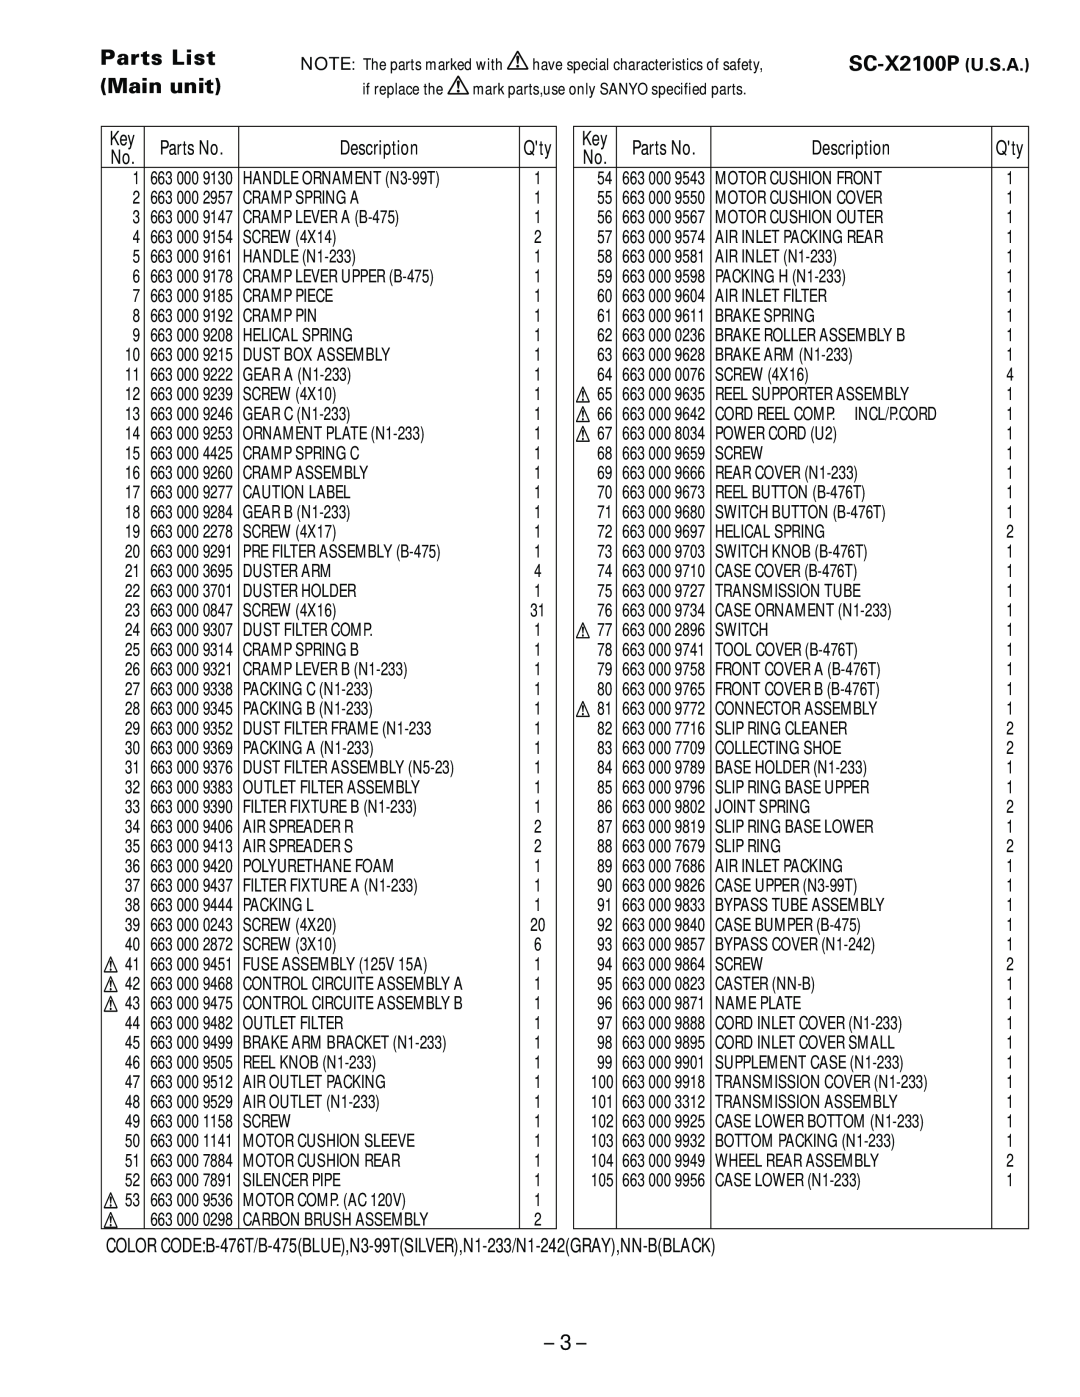 Sanyo specifications Parts List Main unit, SC-X2100P U.S.A, Description 